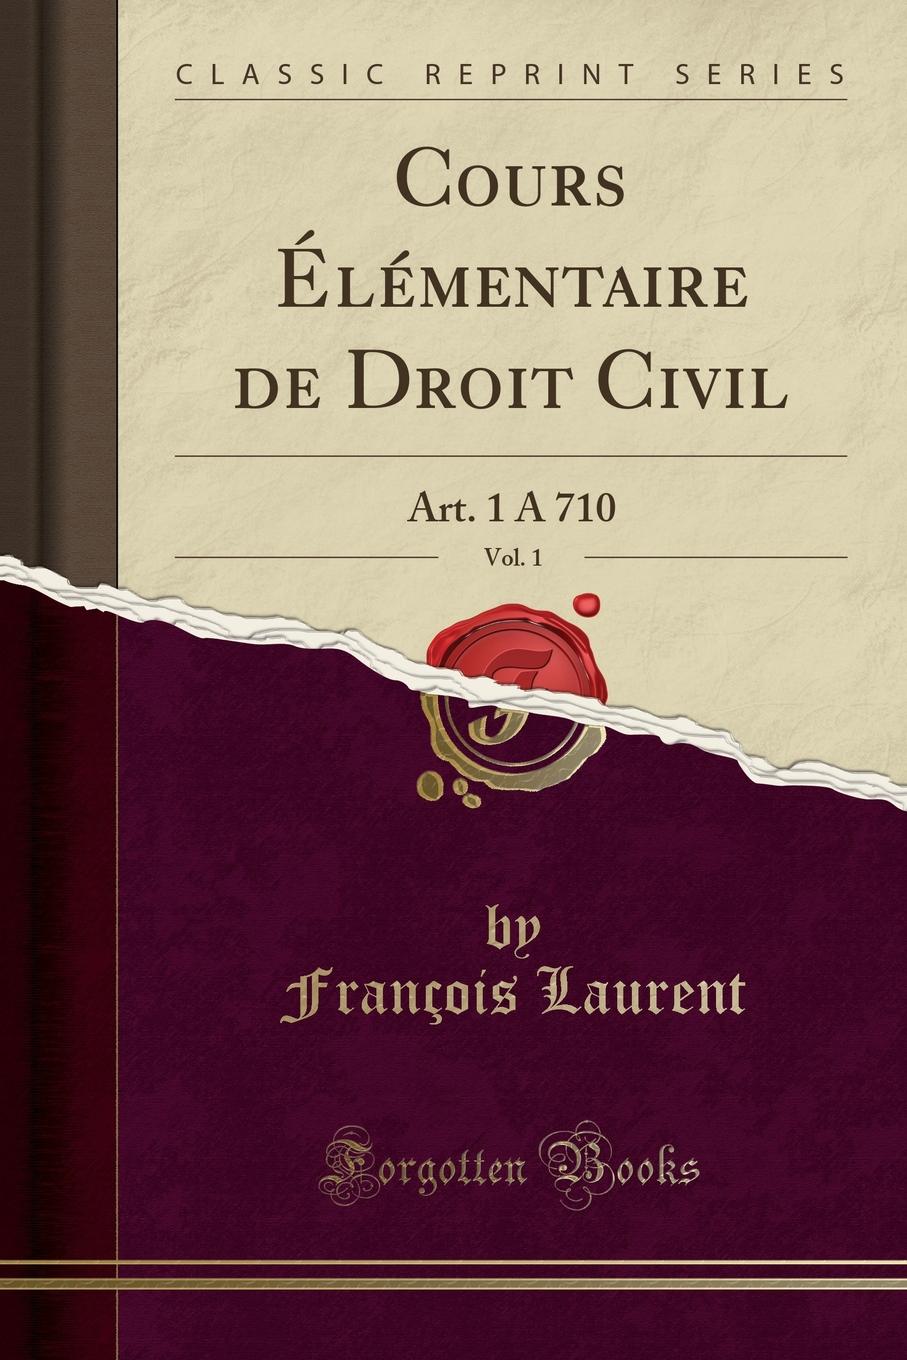 François Laurent Cours Elementaire de Droit Civil, Vol. 1. Art. 1 A 710 (Classic Reprint)